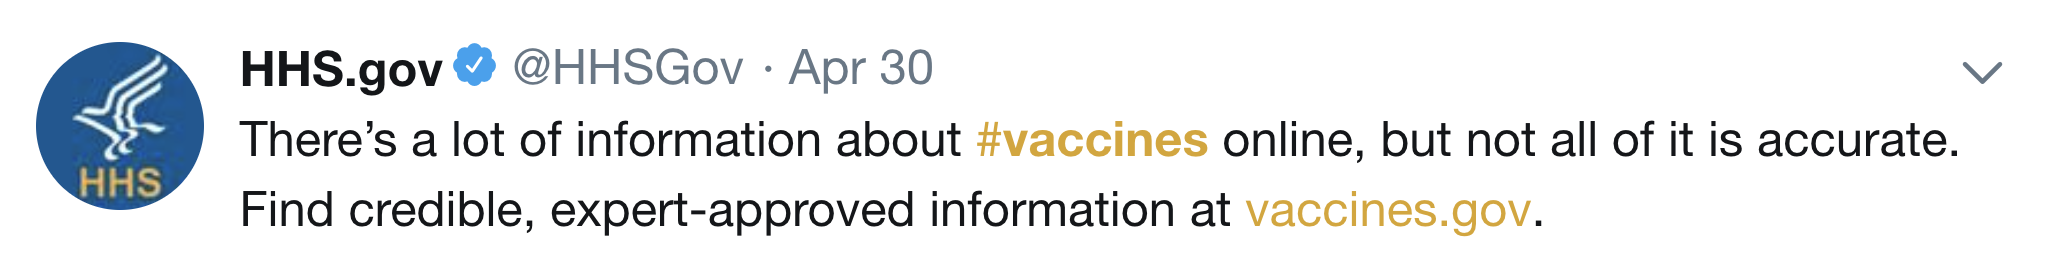 Twitter vaccine pinned tweet